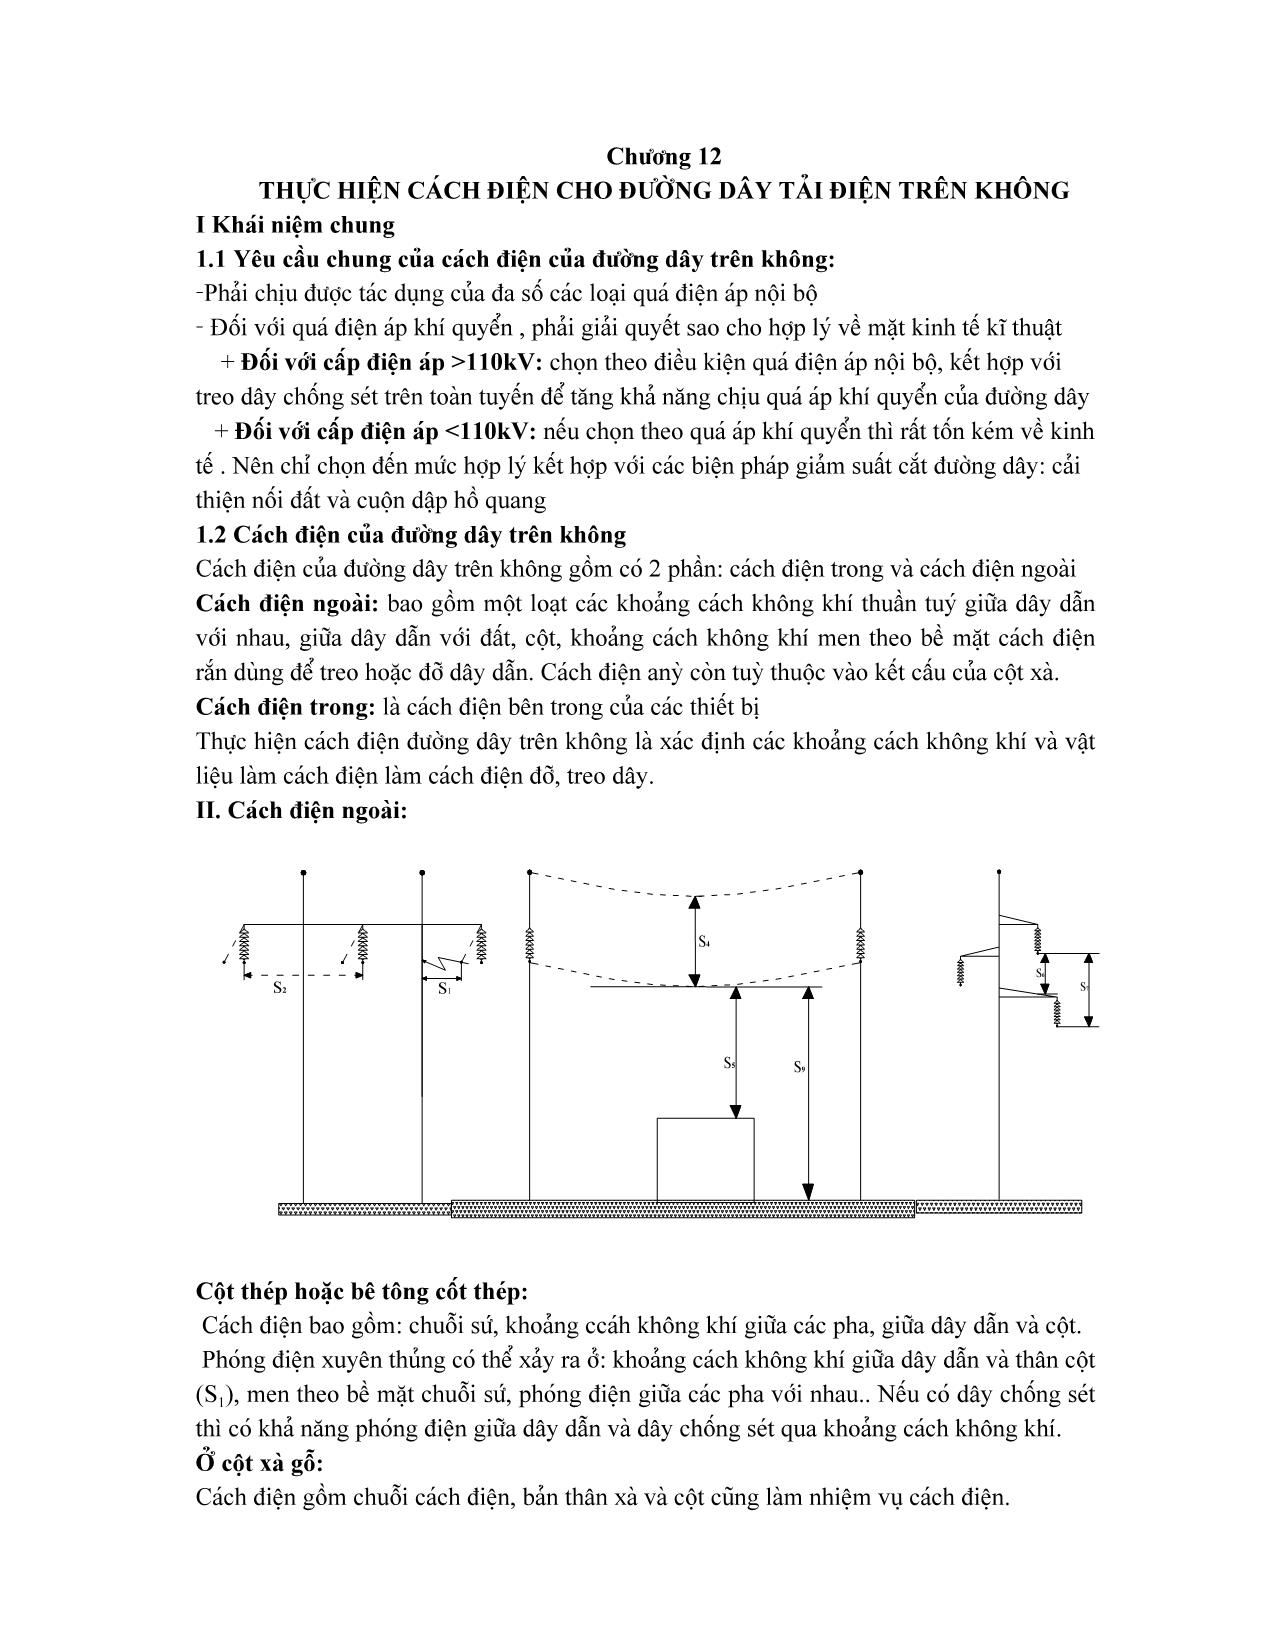 Giáo trình Vật liệu điện - Chương 12: Thực hiện cách điện cho đường dây tải điện trên không trang 1